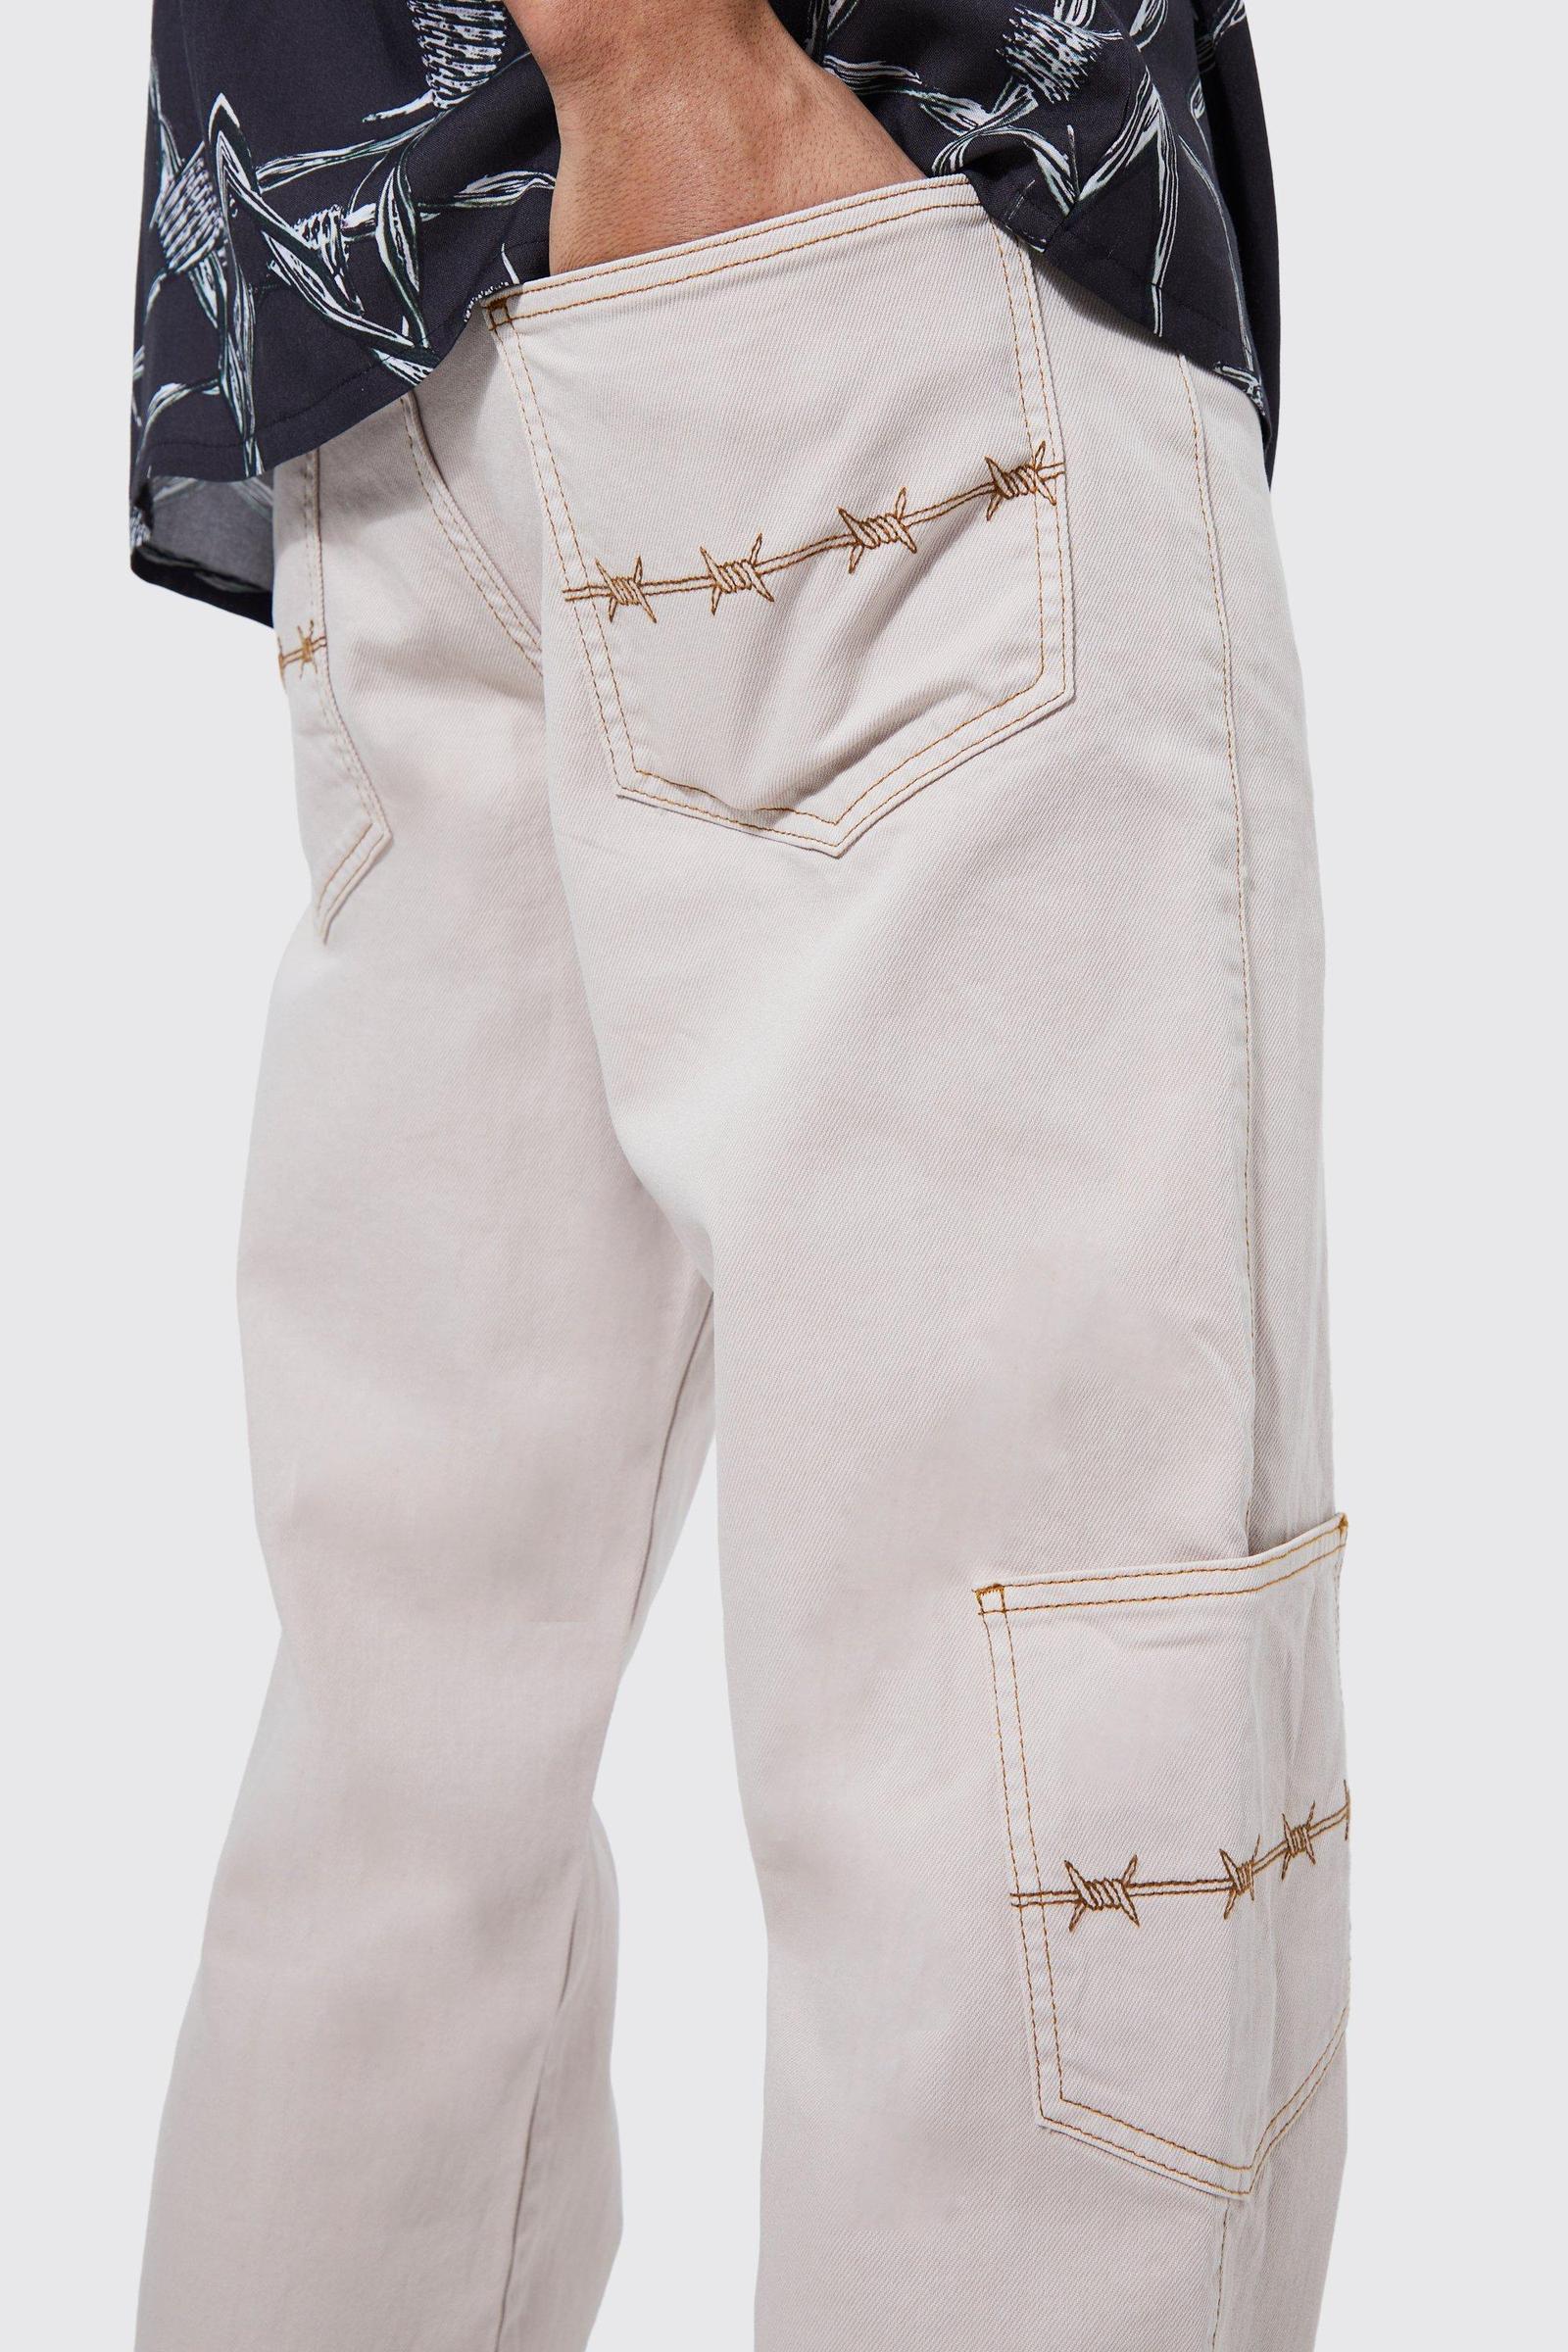 beżowe spodnie jeans cargo wzór bawełna